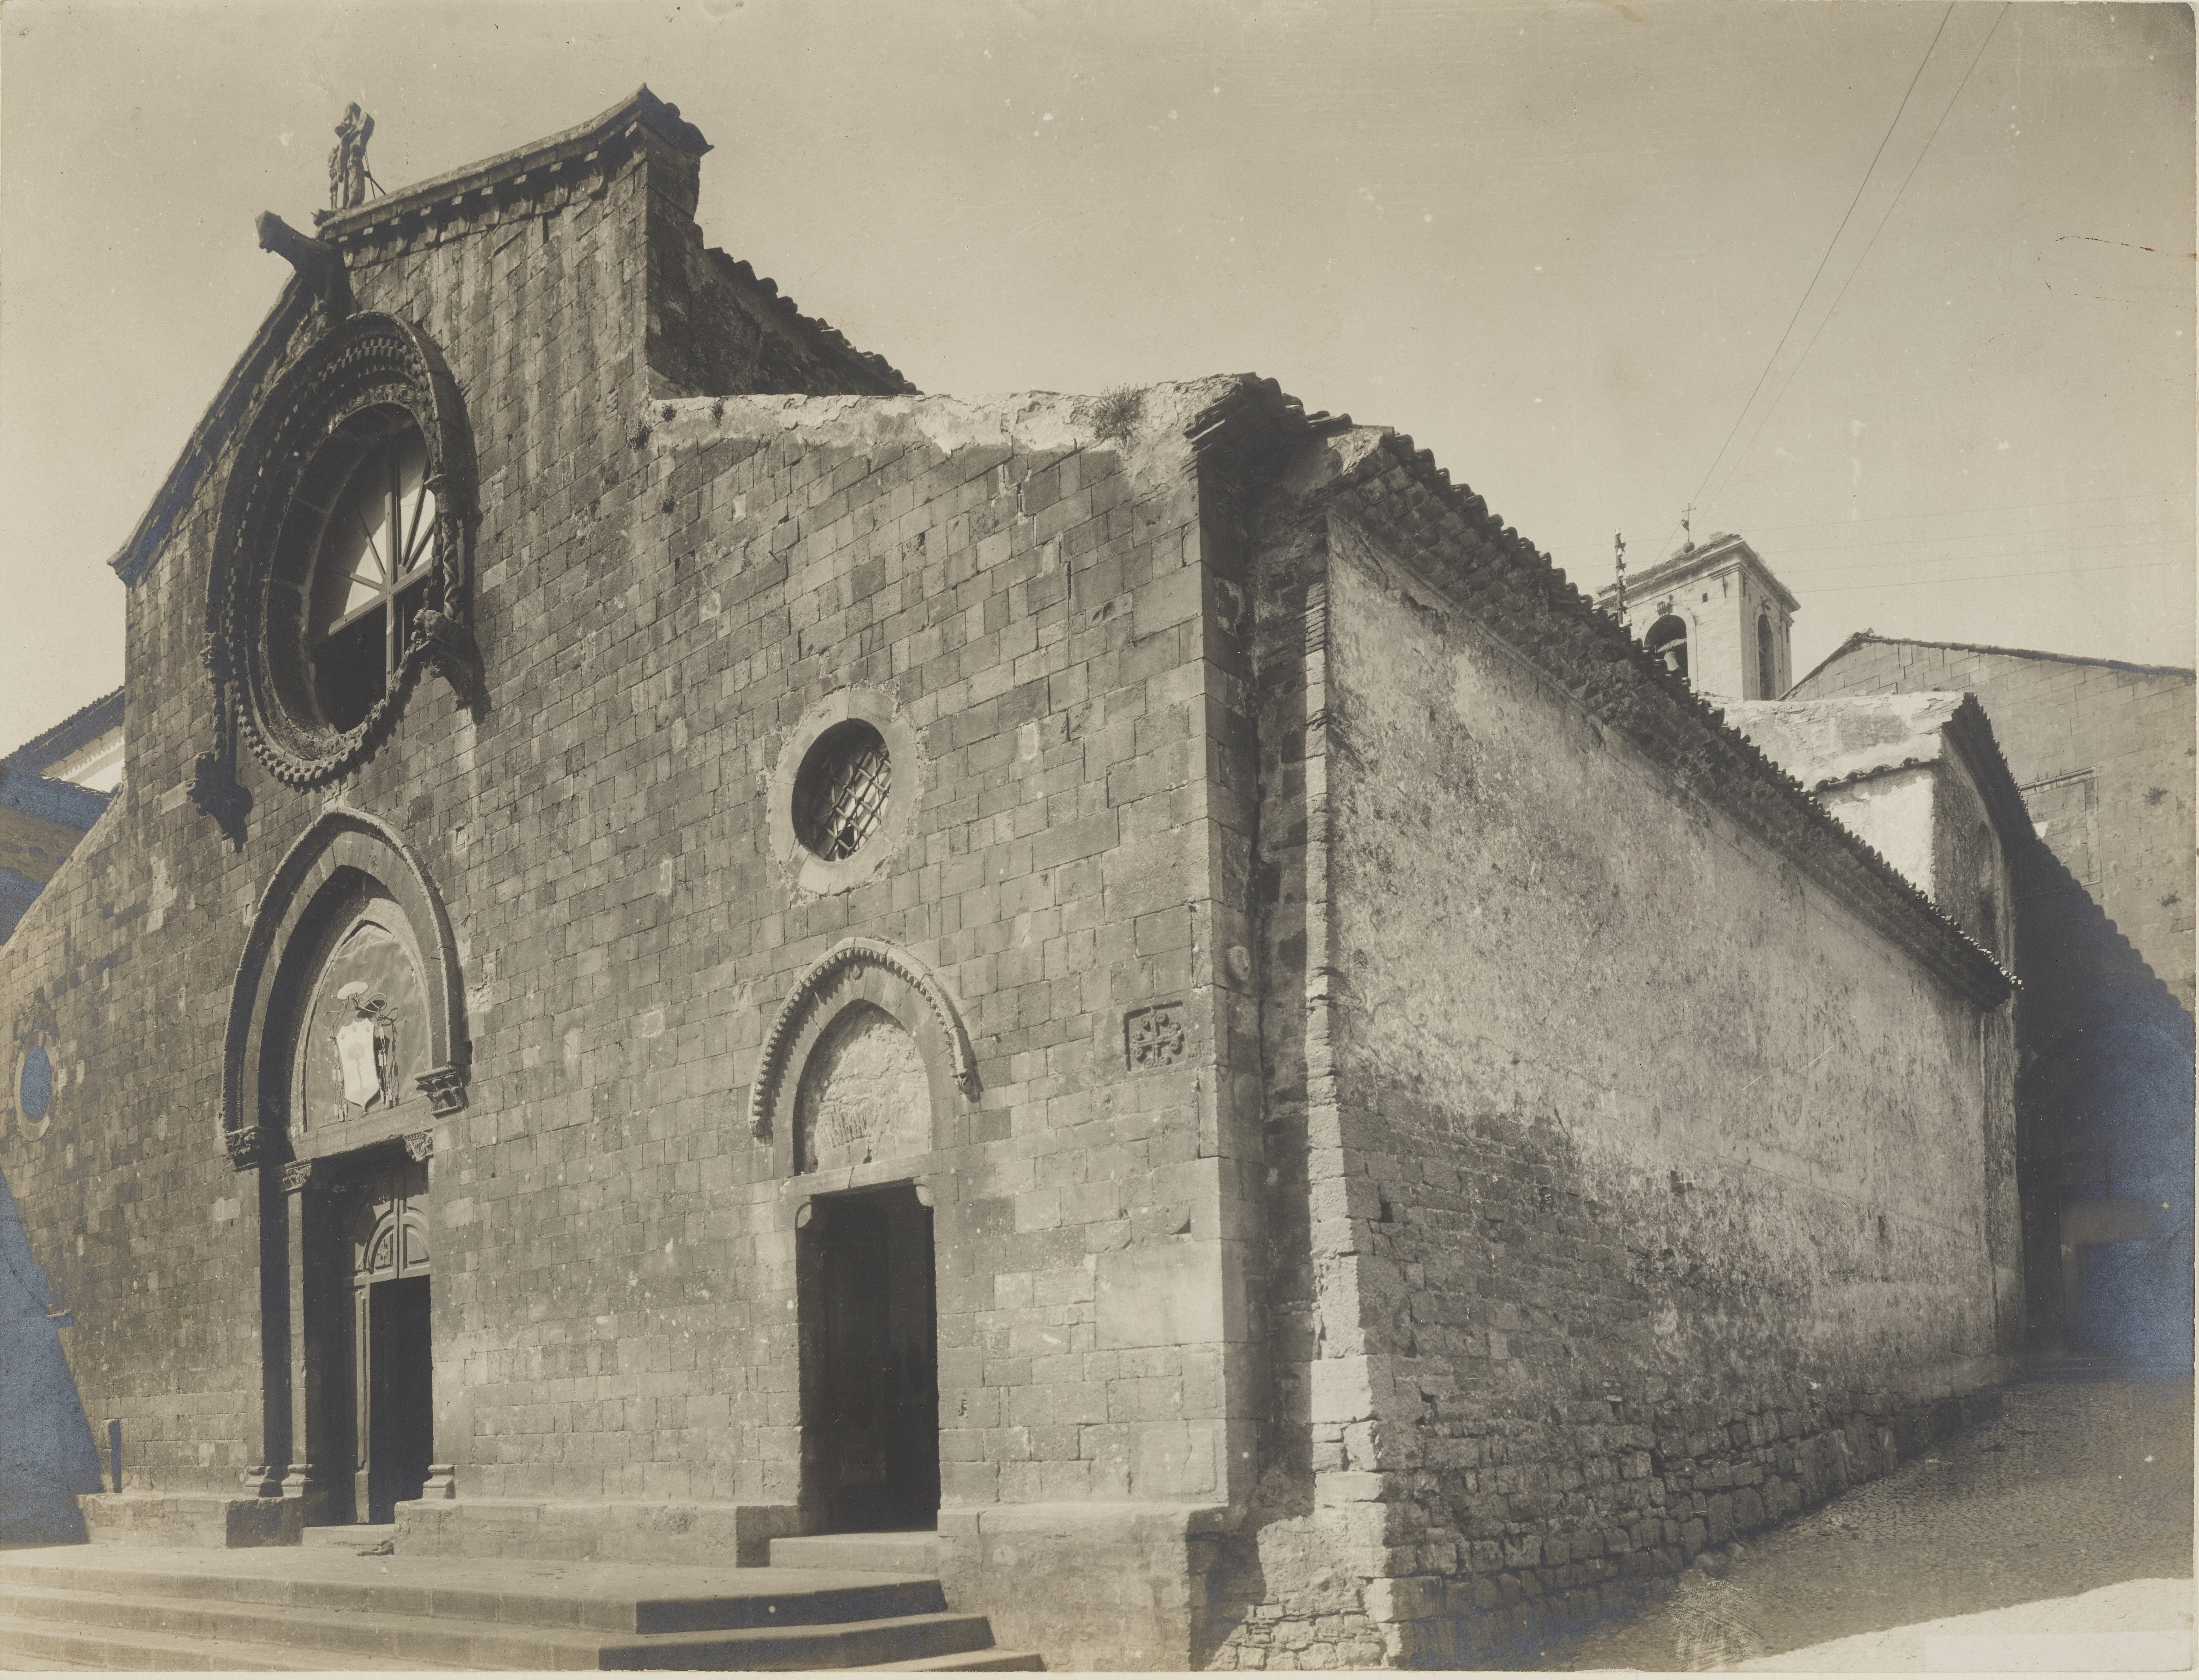 Fotografo non identificato, Bovino - Chiesa di S. Maria assunta, facciata e fianco lato destro, 1891-1910, gelatina ai sali d'argento, MPI141087